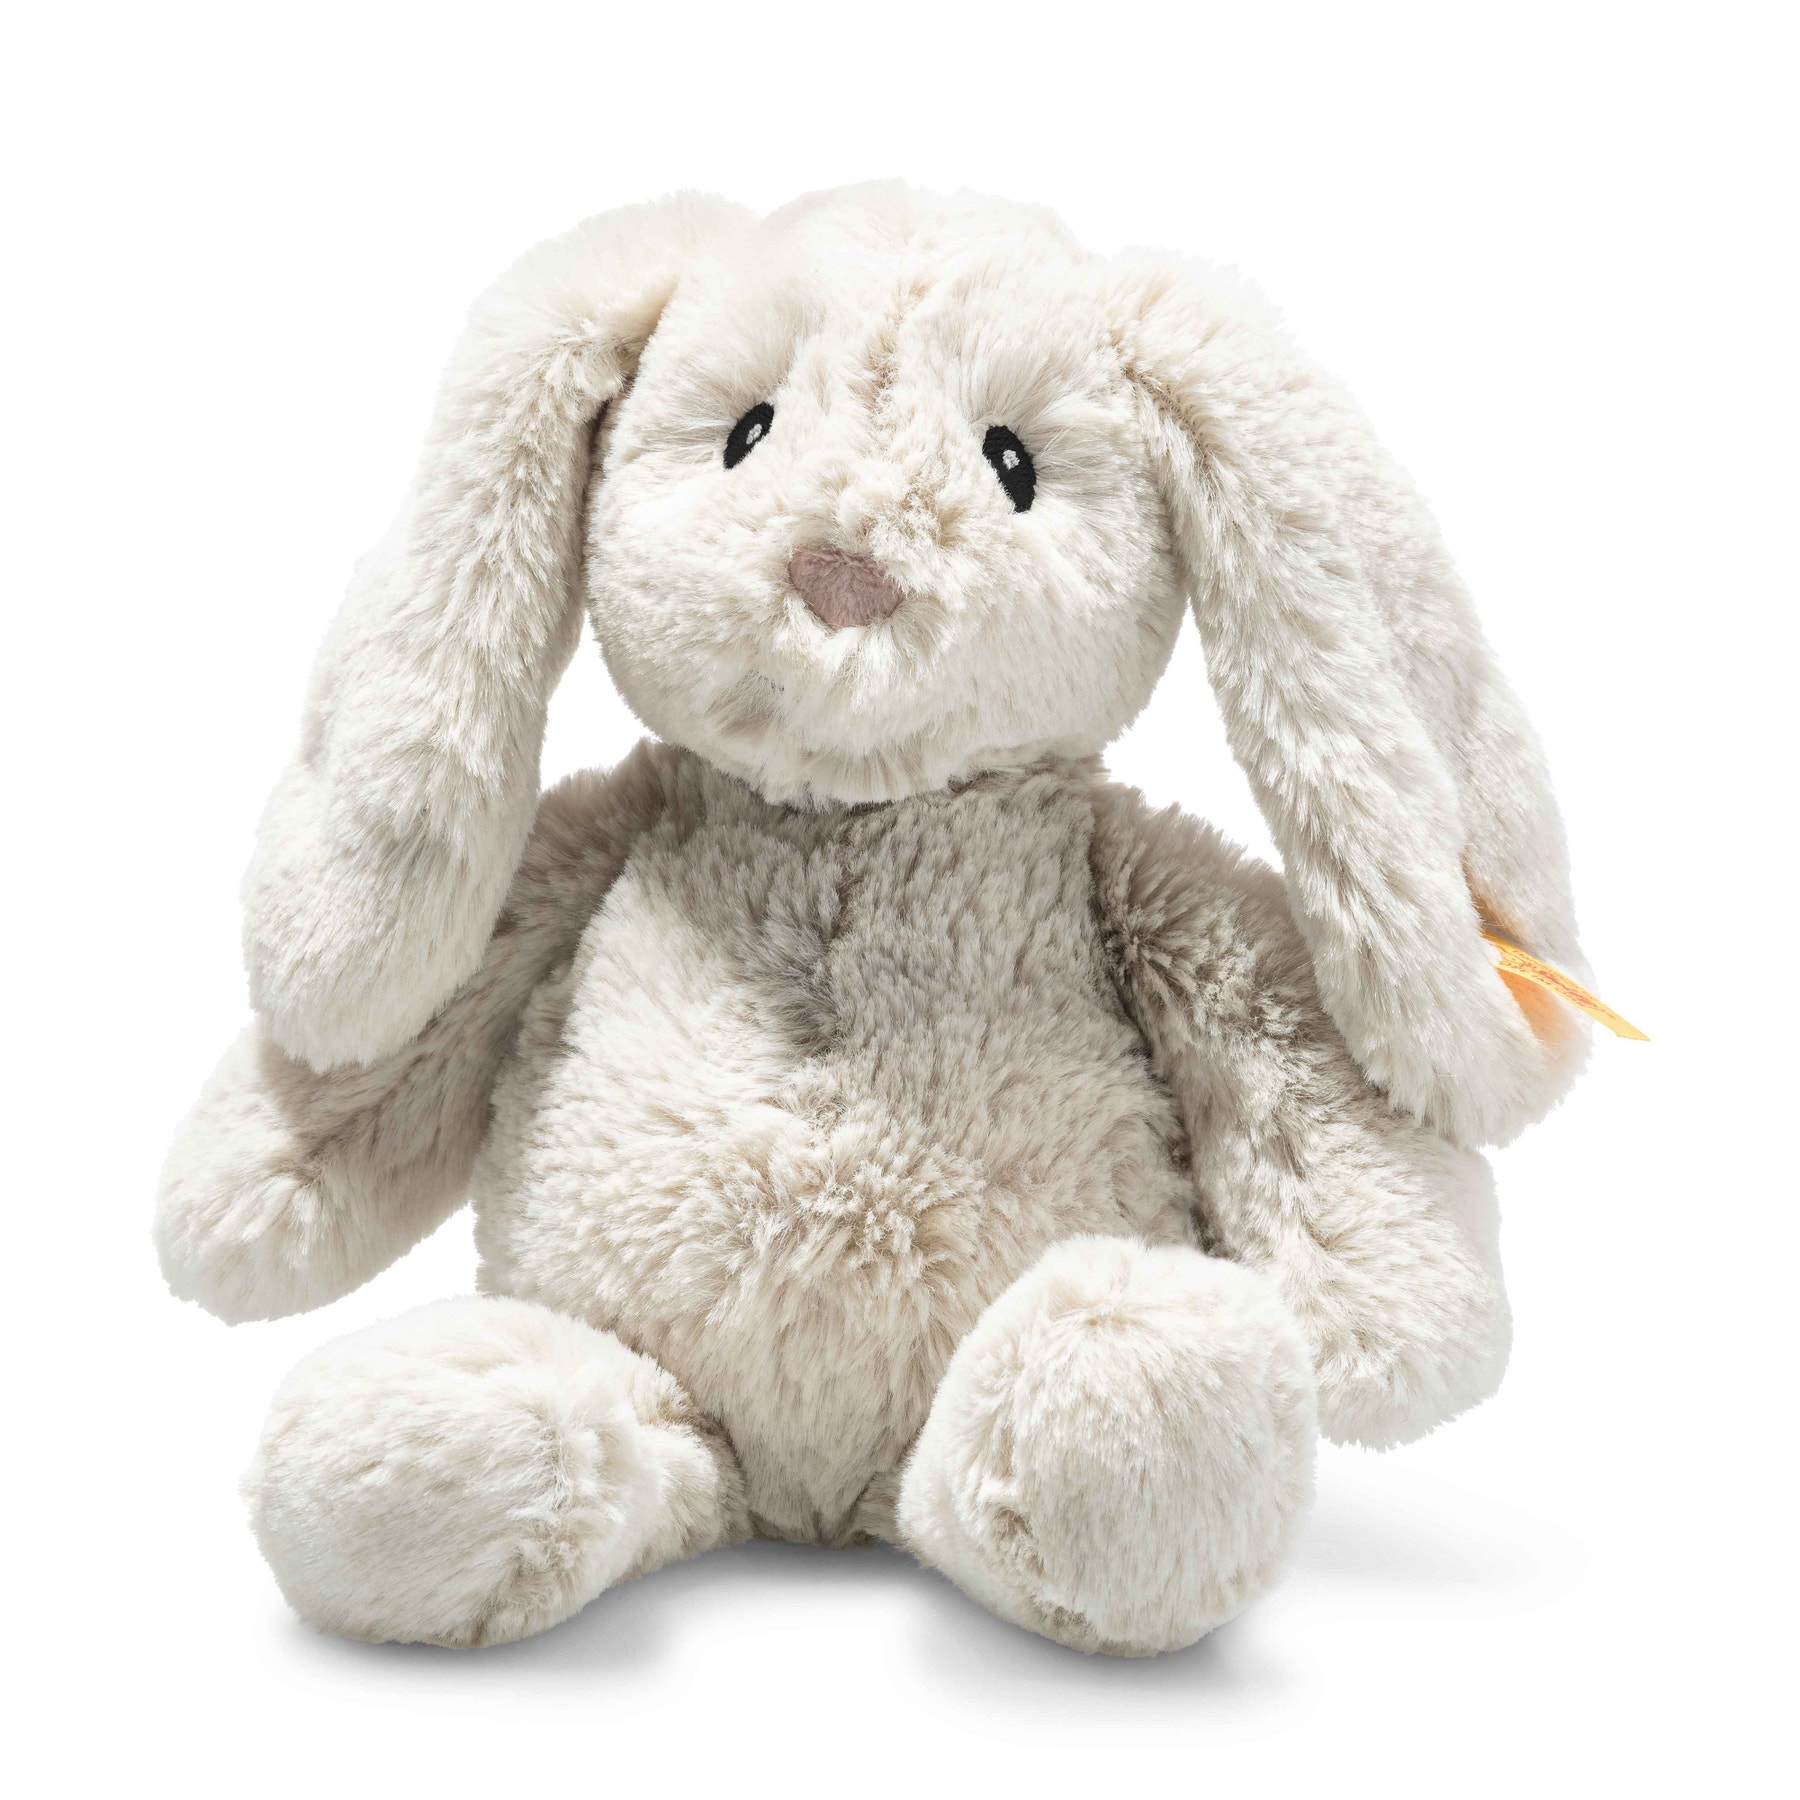 Hoppie Rabbit Baby Toy